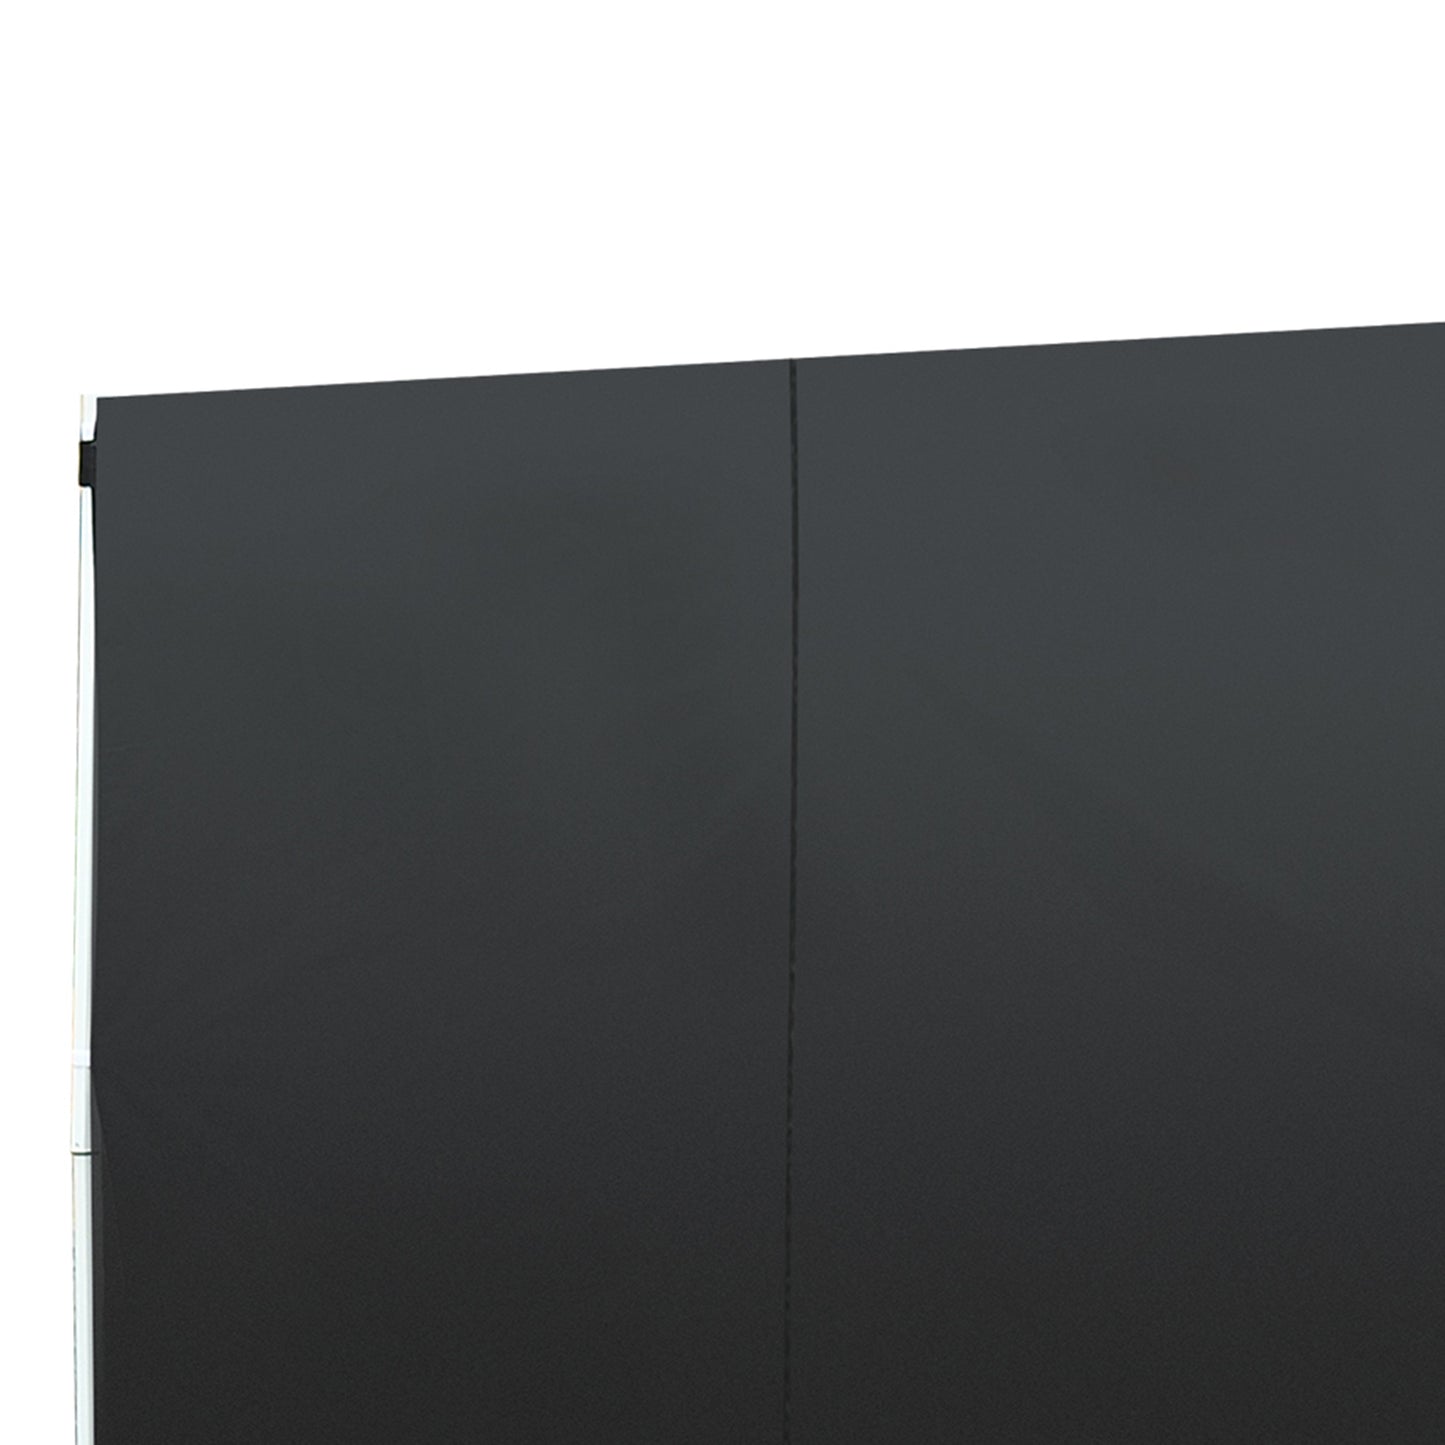 Outsunny 3m Gazebo Exchangeable Side Panels Wall W/ Window-Black